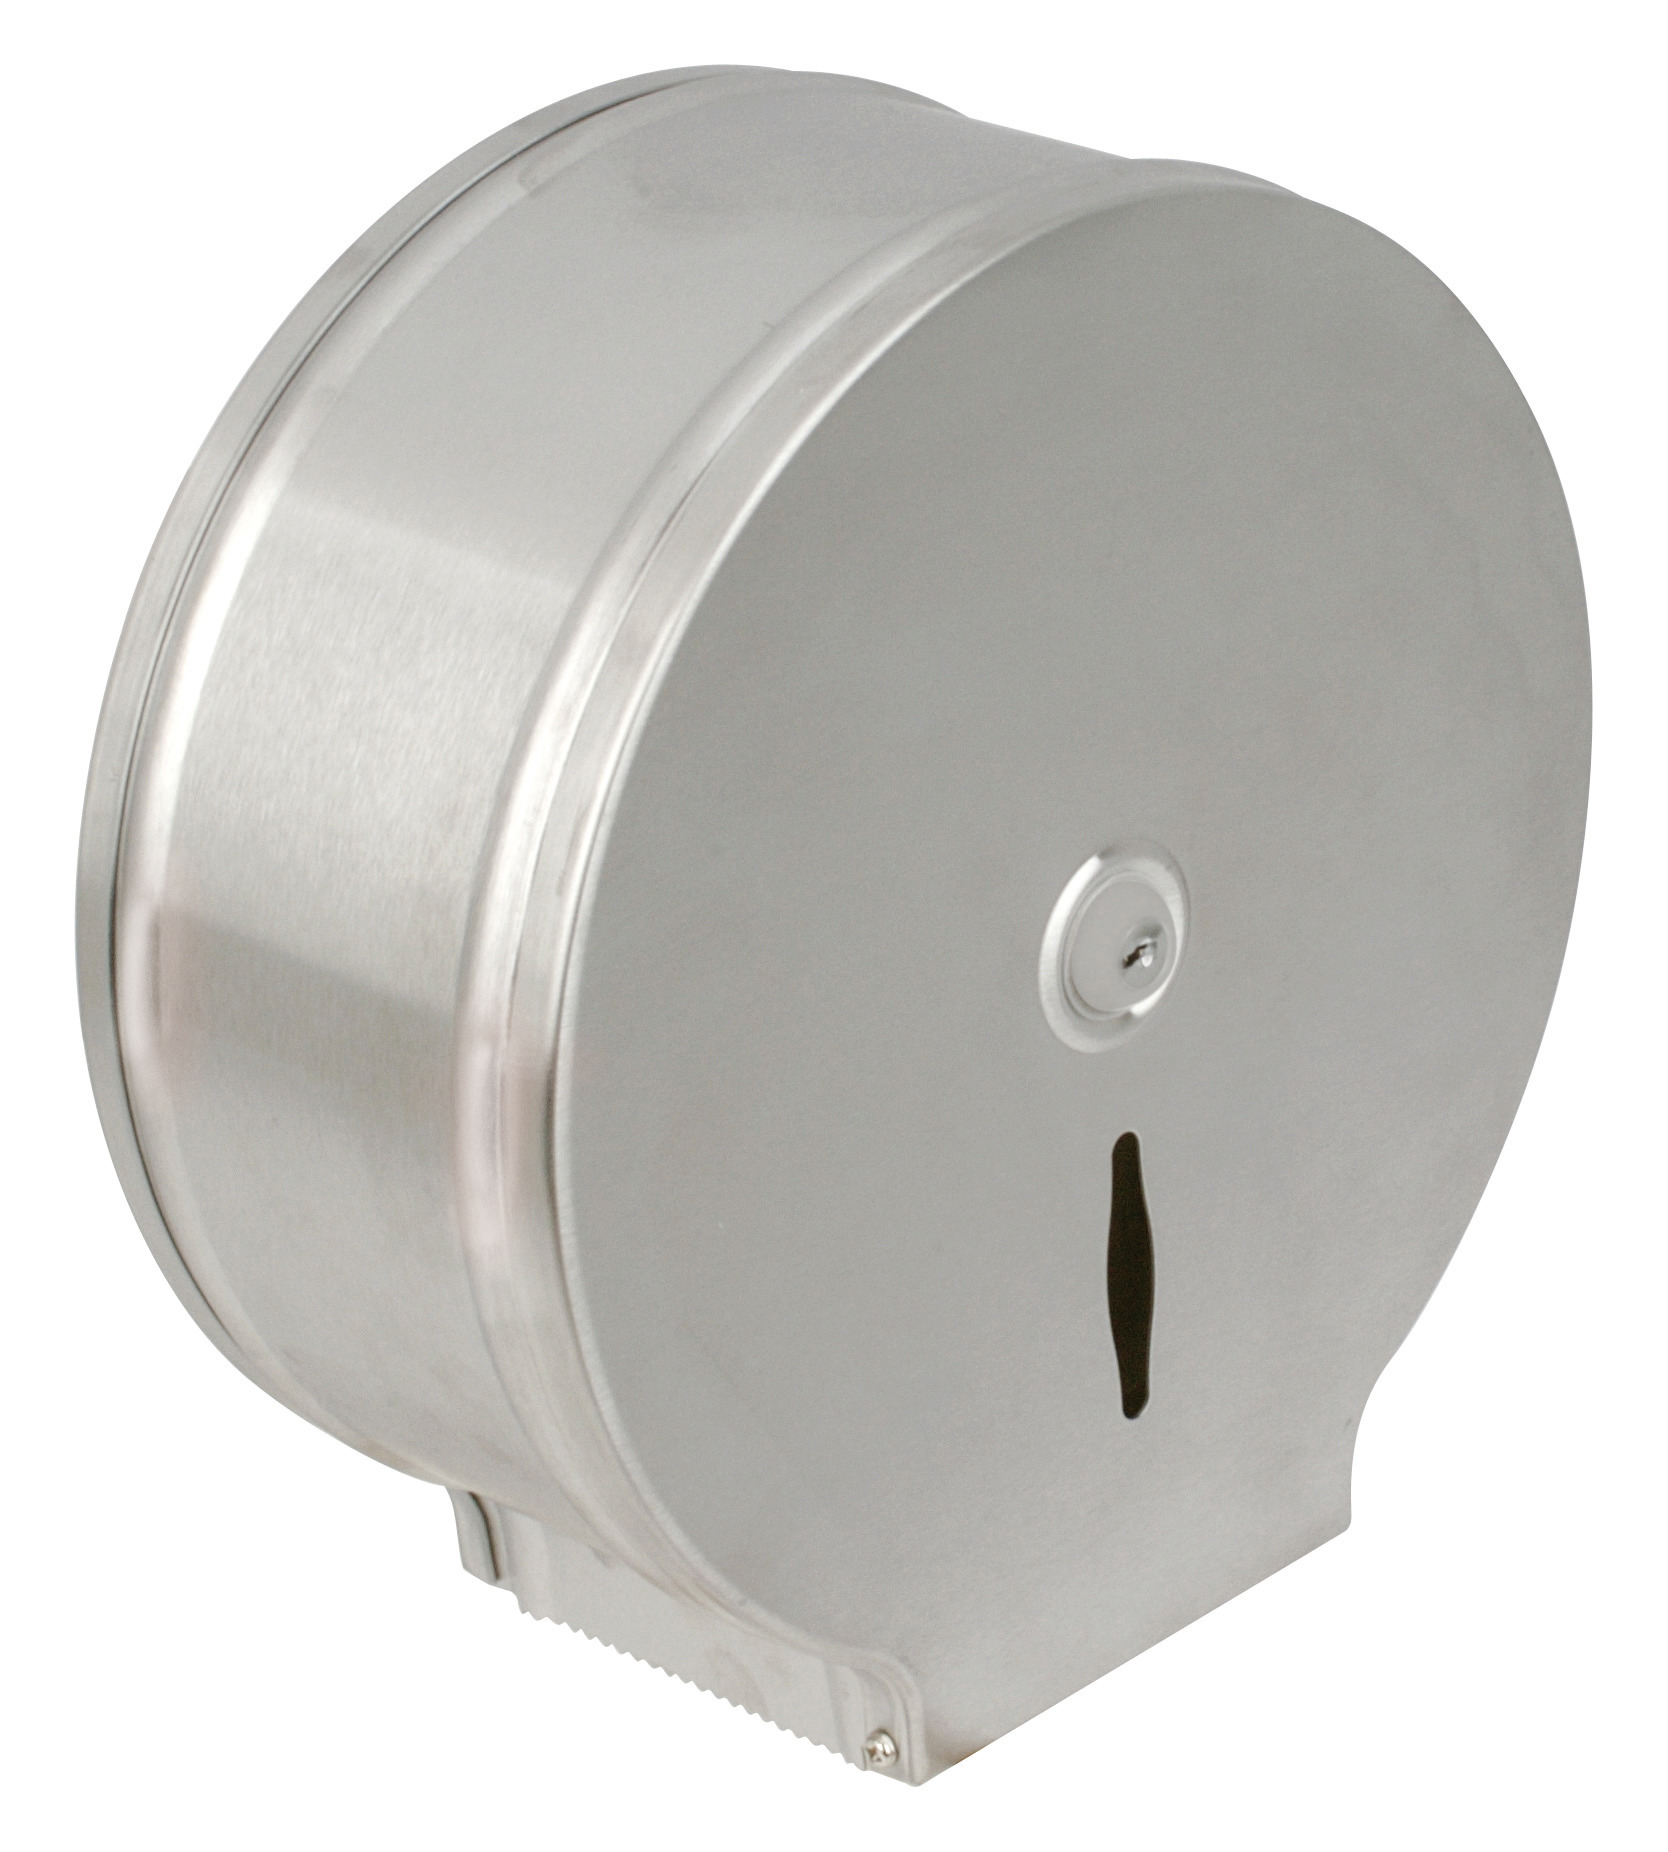 Toilettenpapier-Spender für 400 m Rolle Edelstahl matt 286 x 117 x 286 mm